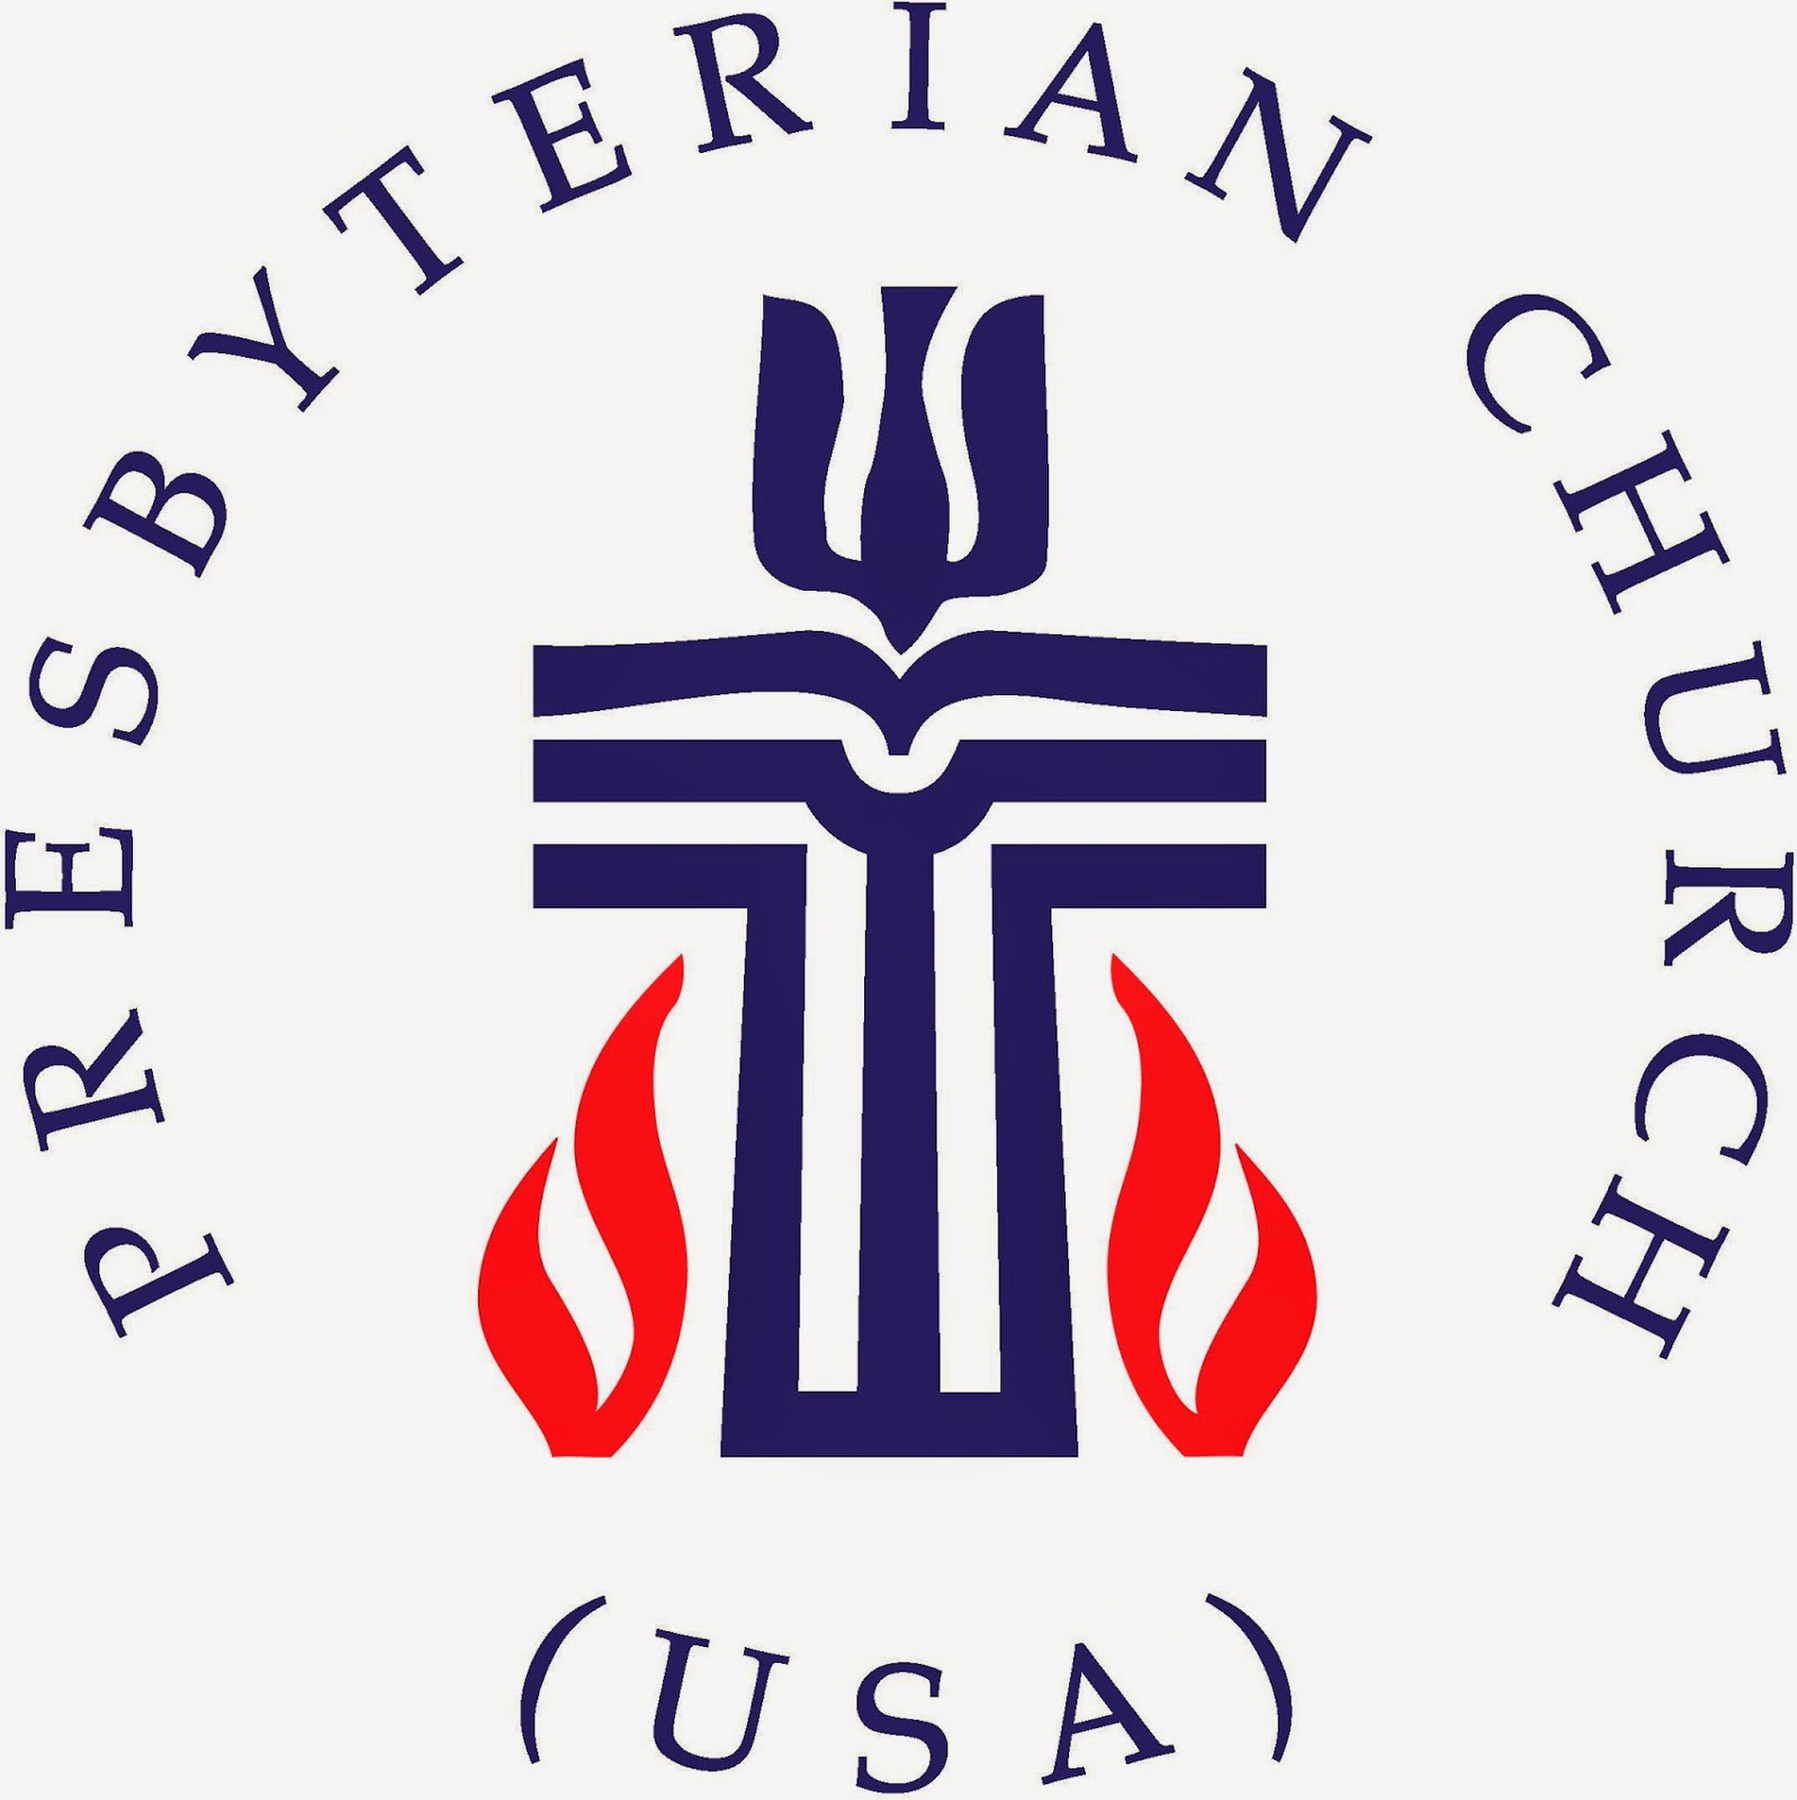 Az amerikai presbiteriániusegyház logójába aztán mindent belesűrítettek, amit csak lehet. Van itt kereszt, biblia a szószéken, egy pásztor köntöse, galamb, hal és tűz, mind egyetlen jelzésen!